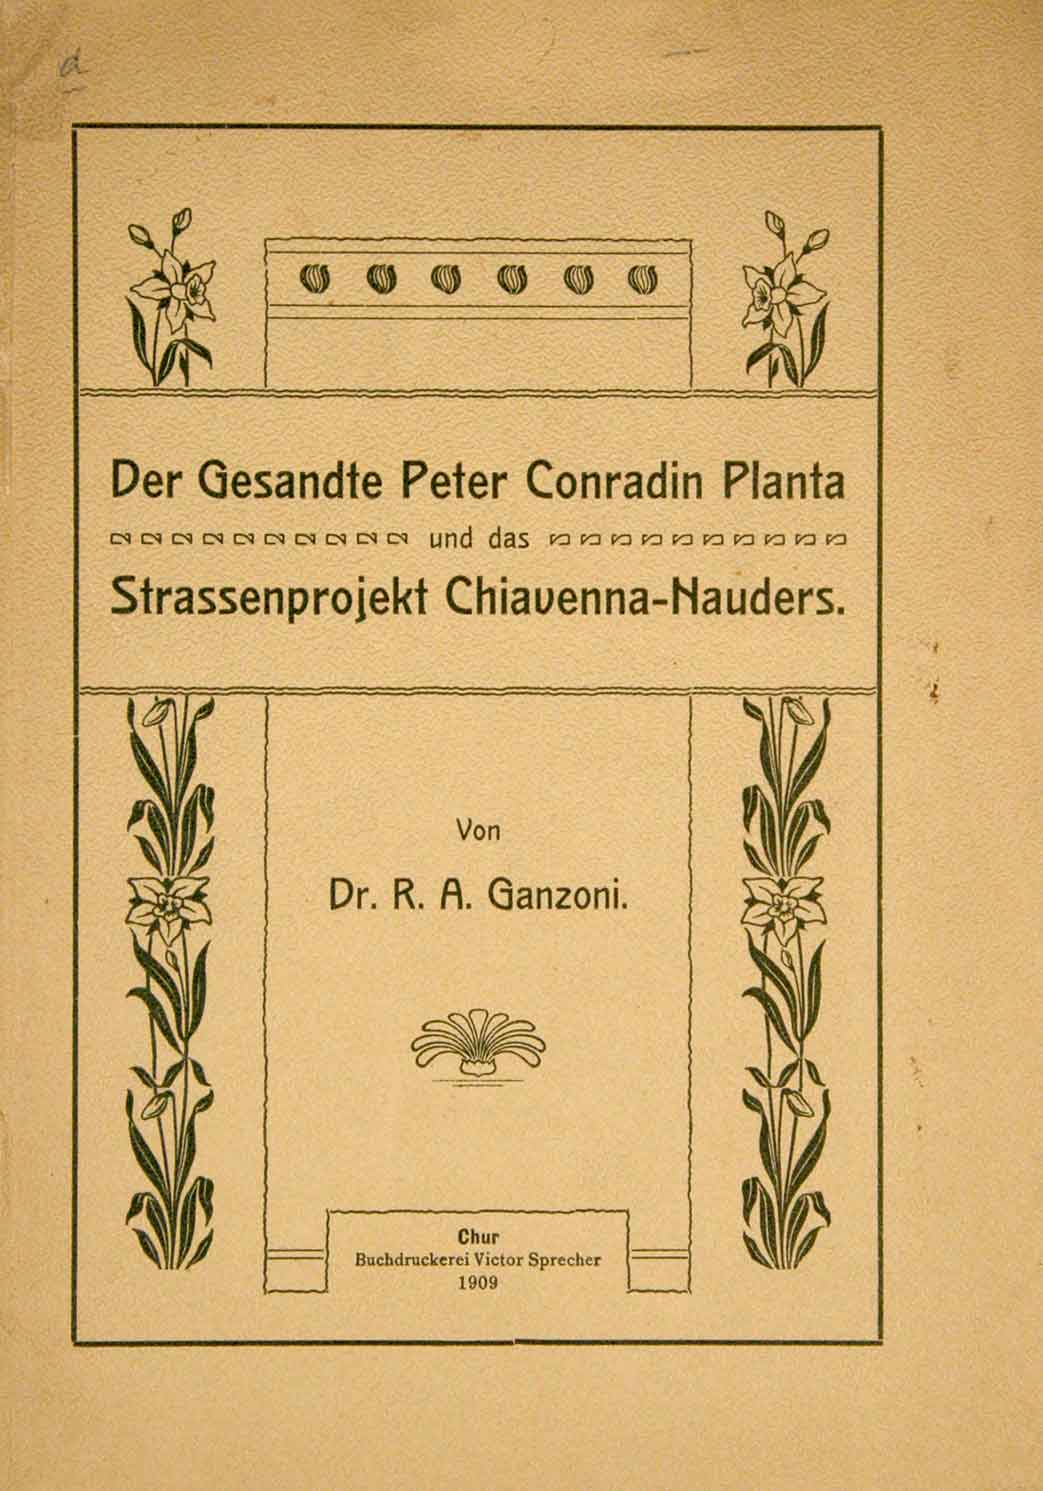 Ganzoni R. A.: - Der Gesandte Peter Conradin Planta und das Strassenprojekt Chiavenna-Nauders. 